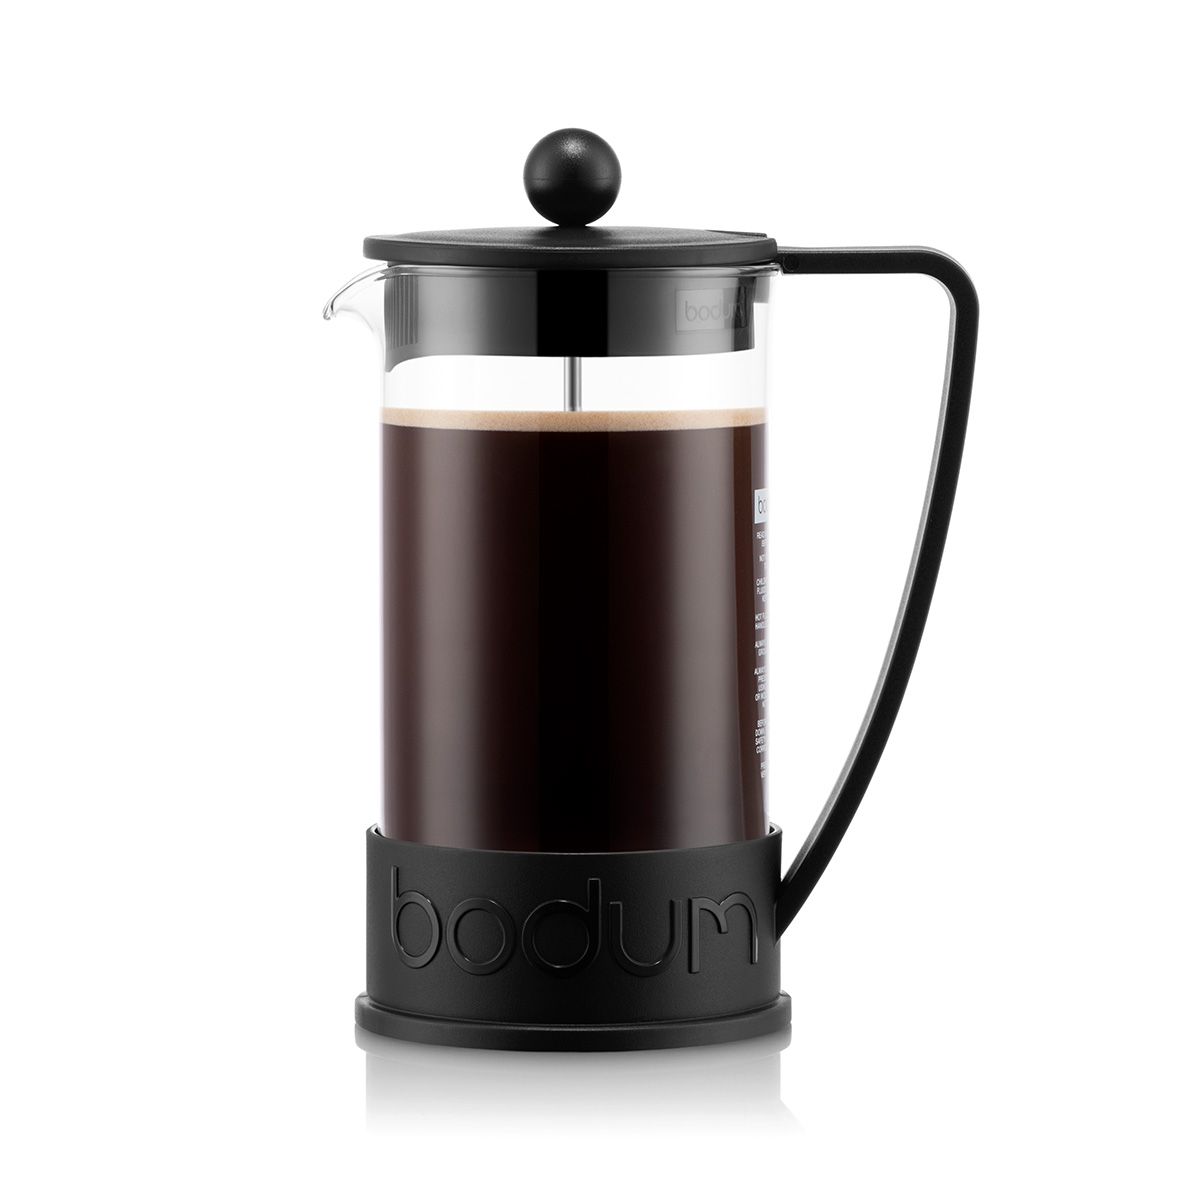 Bodum Brasilien kaffe brygger svart 1 l, 8 kopp